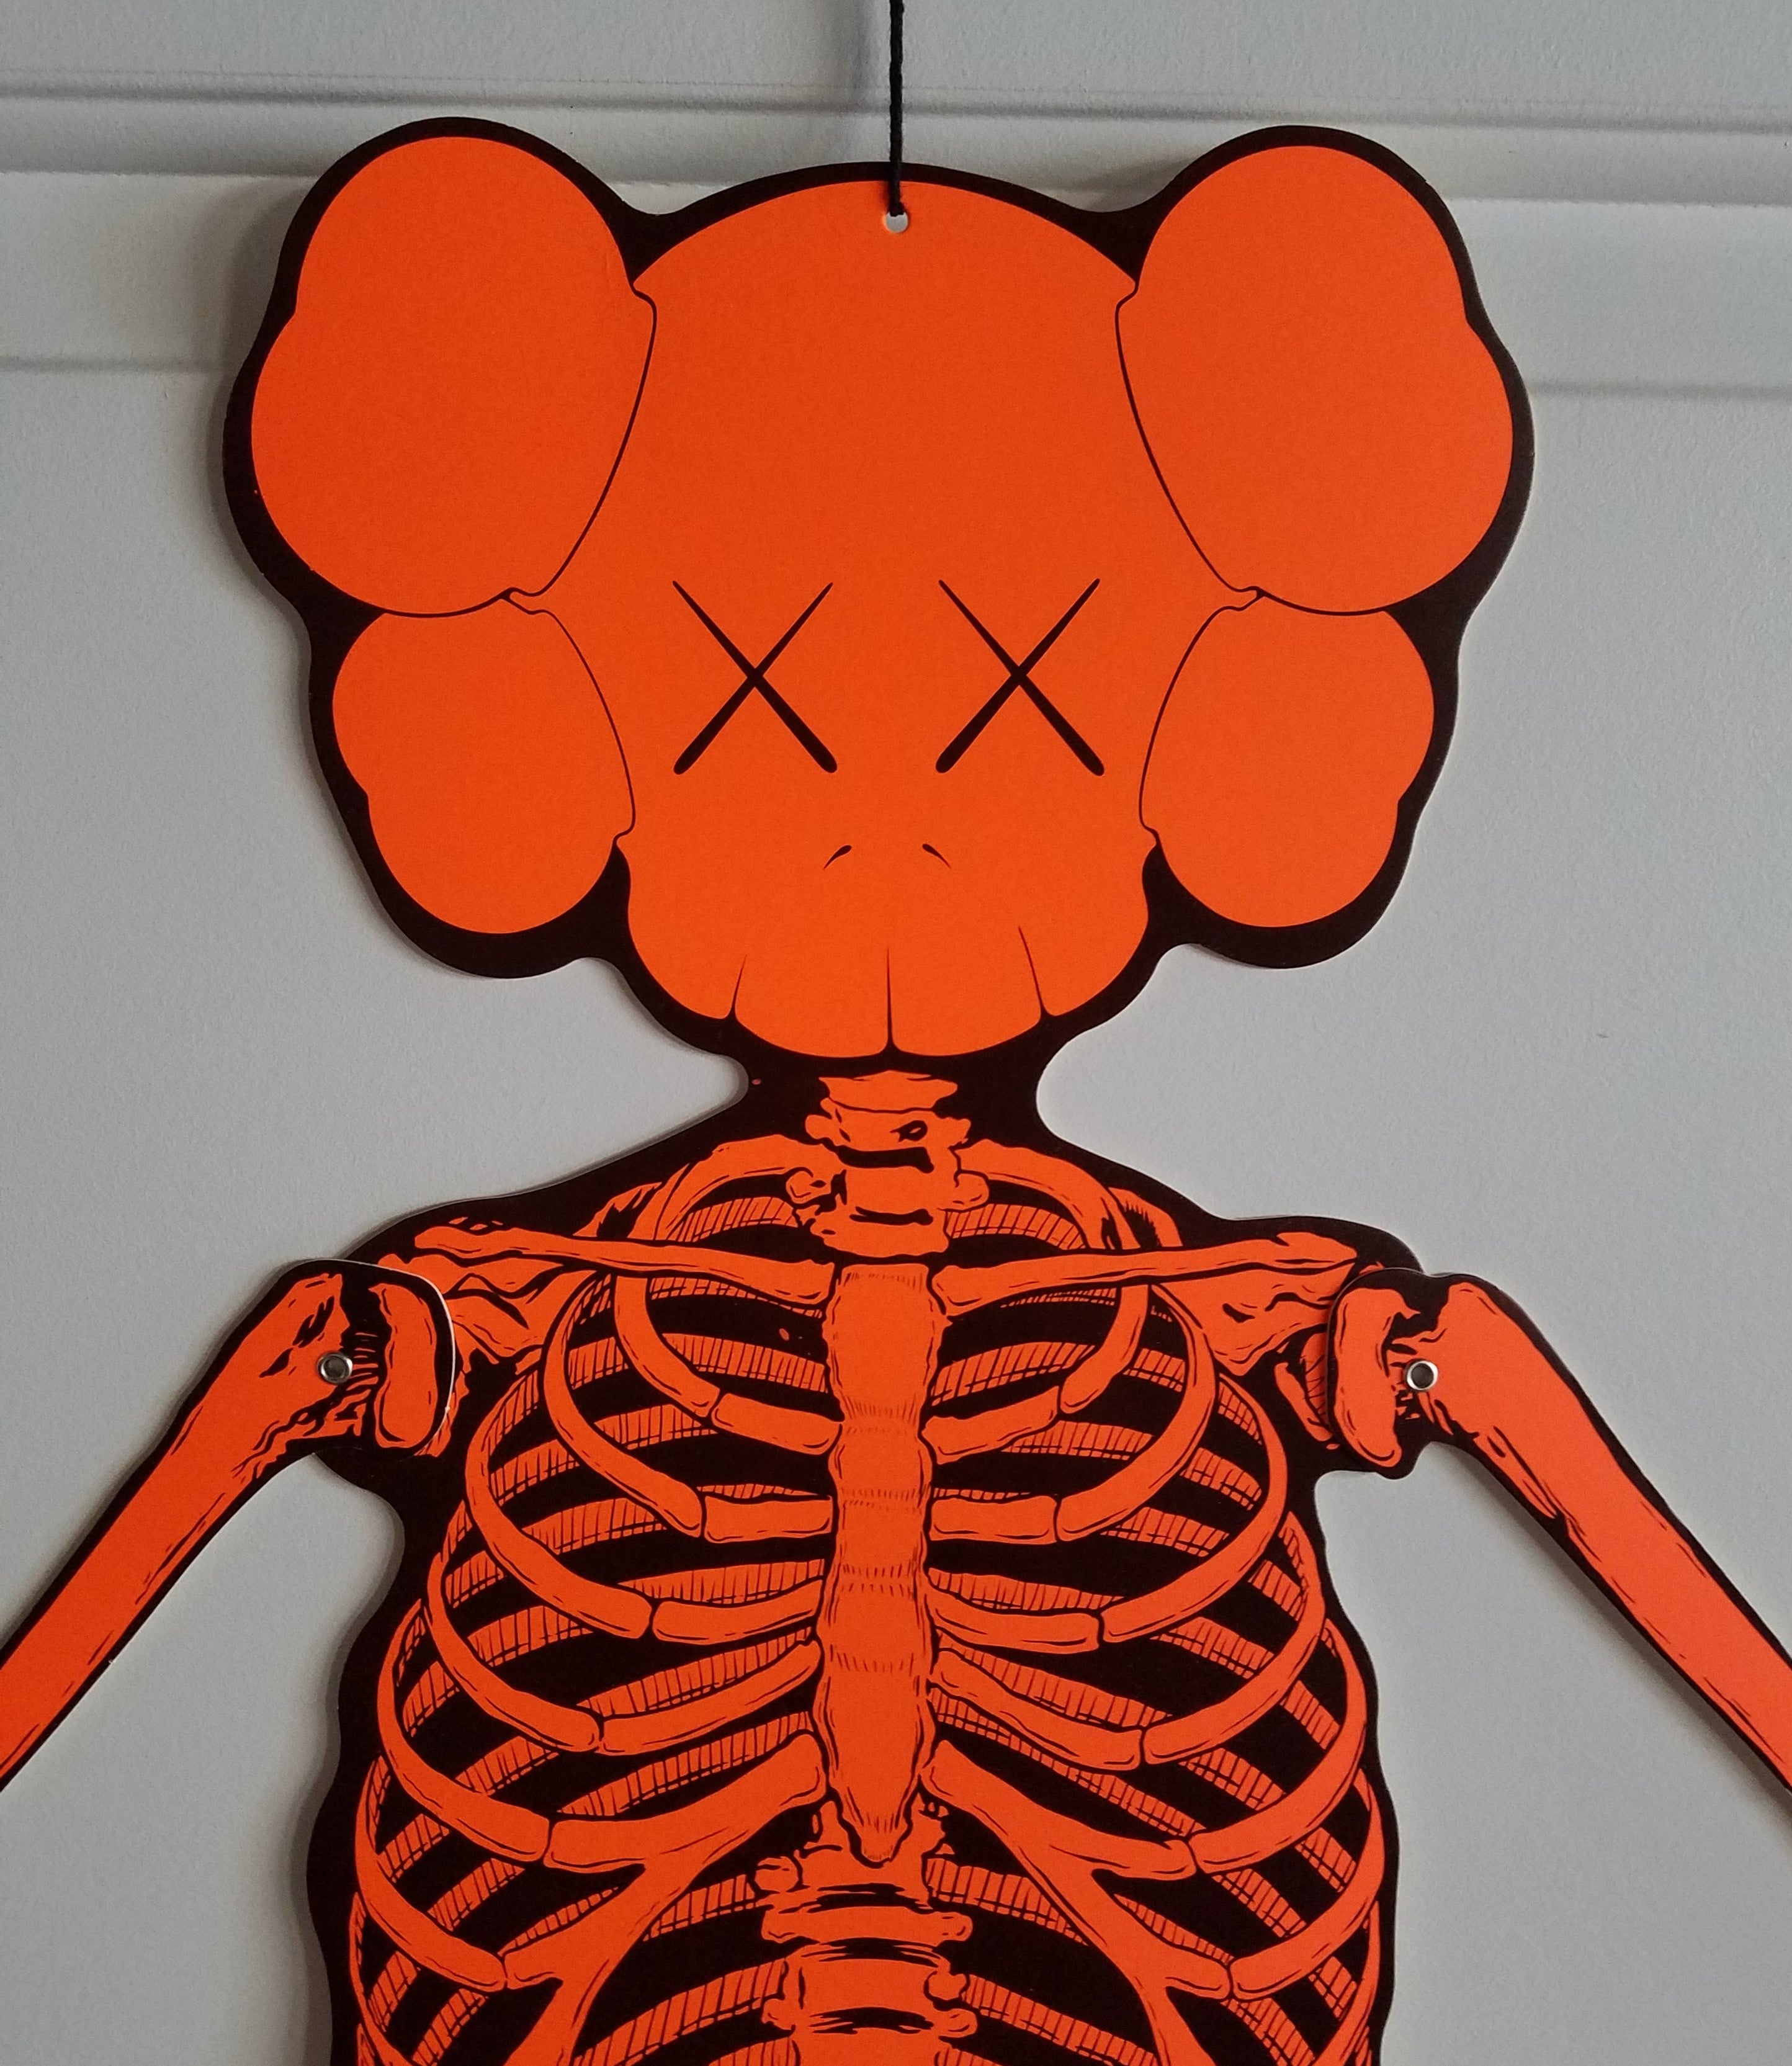 KAWS Skeleton Cardboard Wall Hanging - Orange